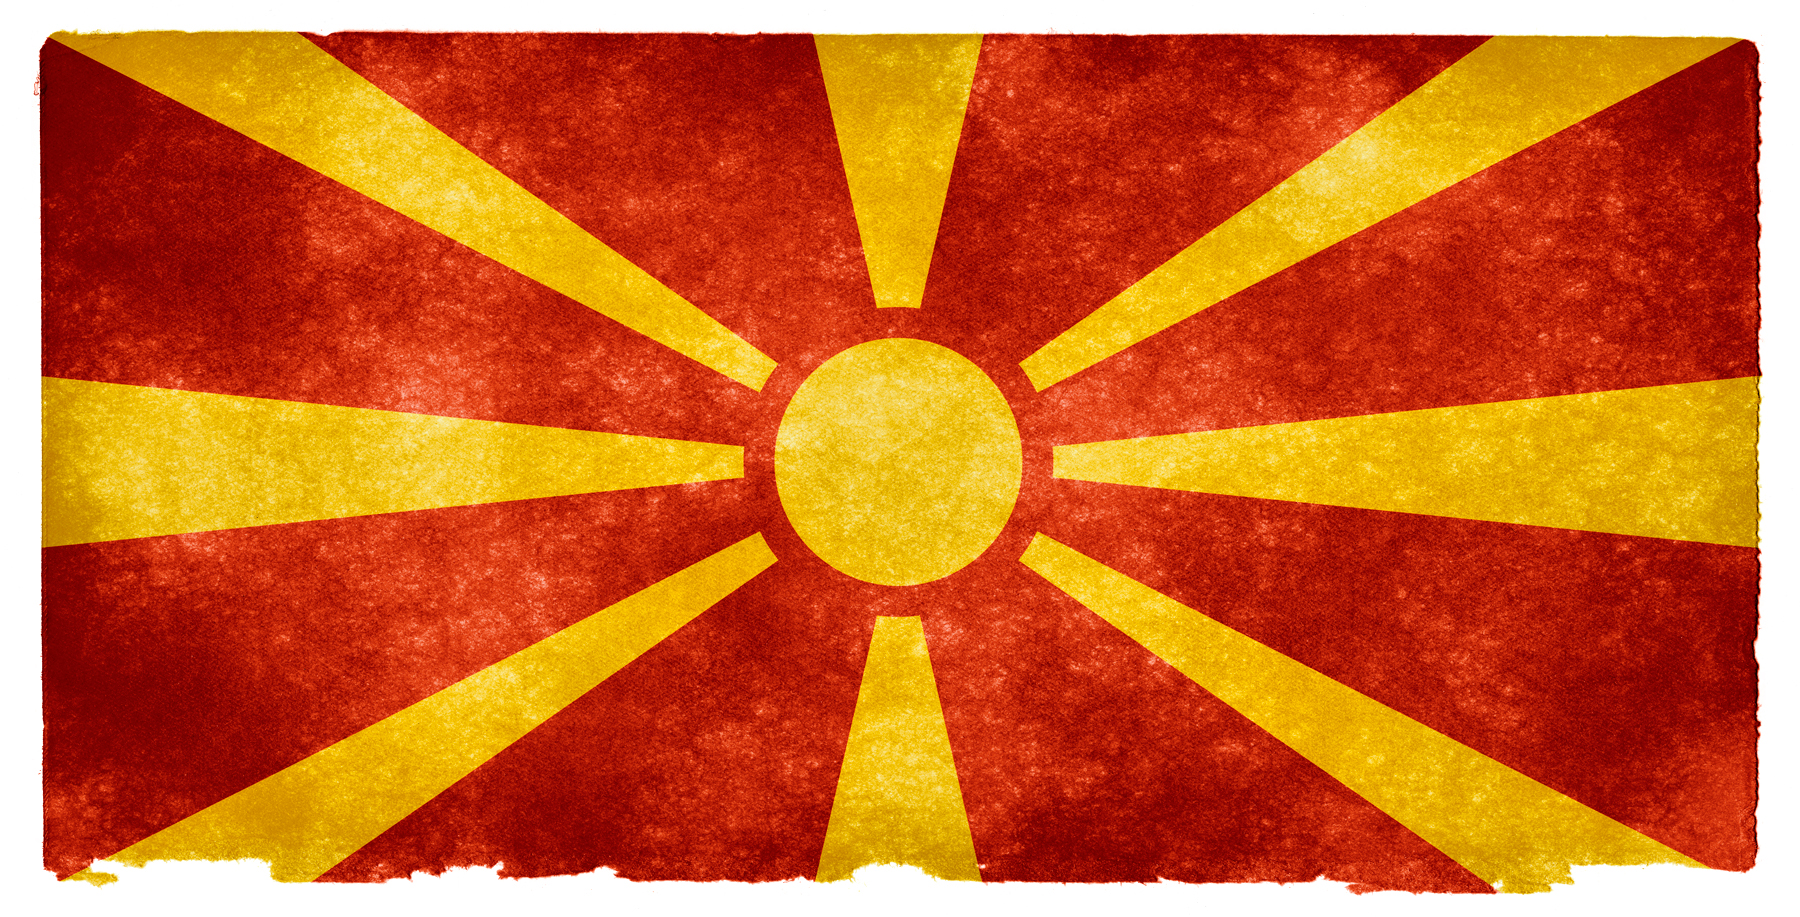 Free photo: Macedonia Grunge Flag - Aged, Republic, Old ...